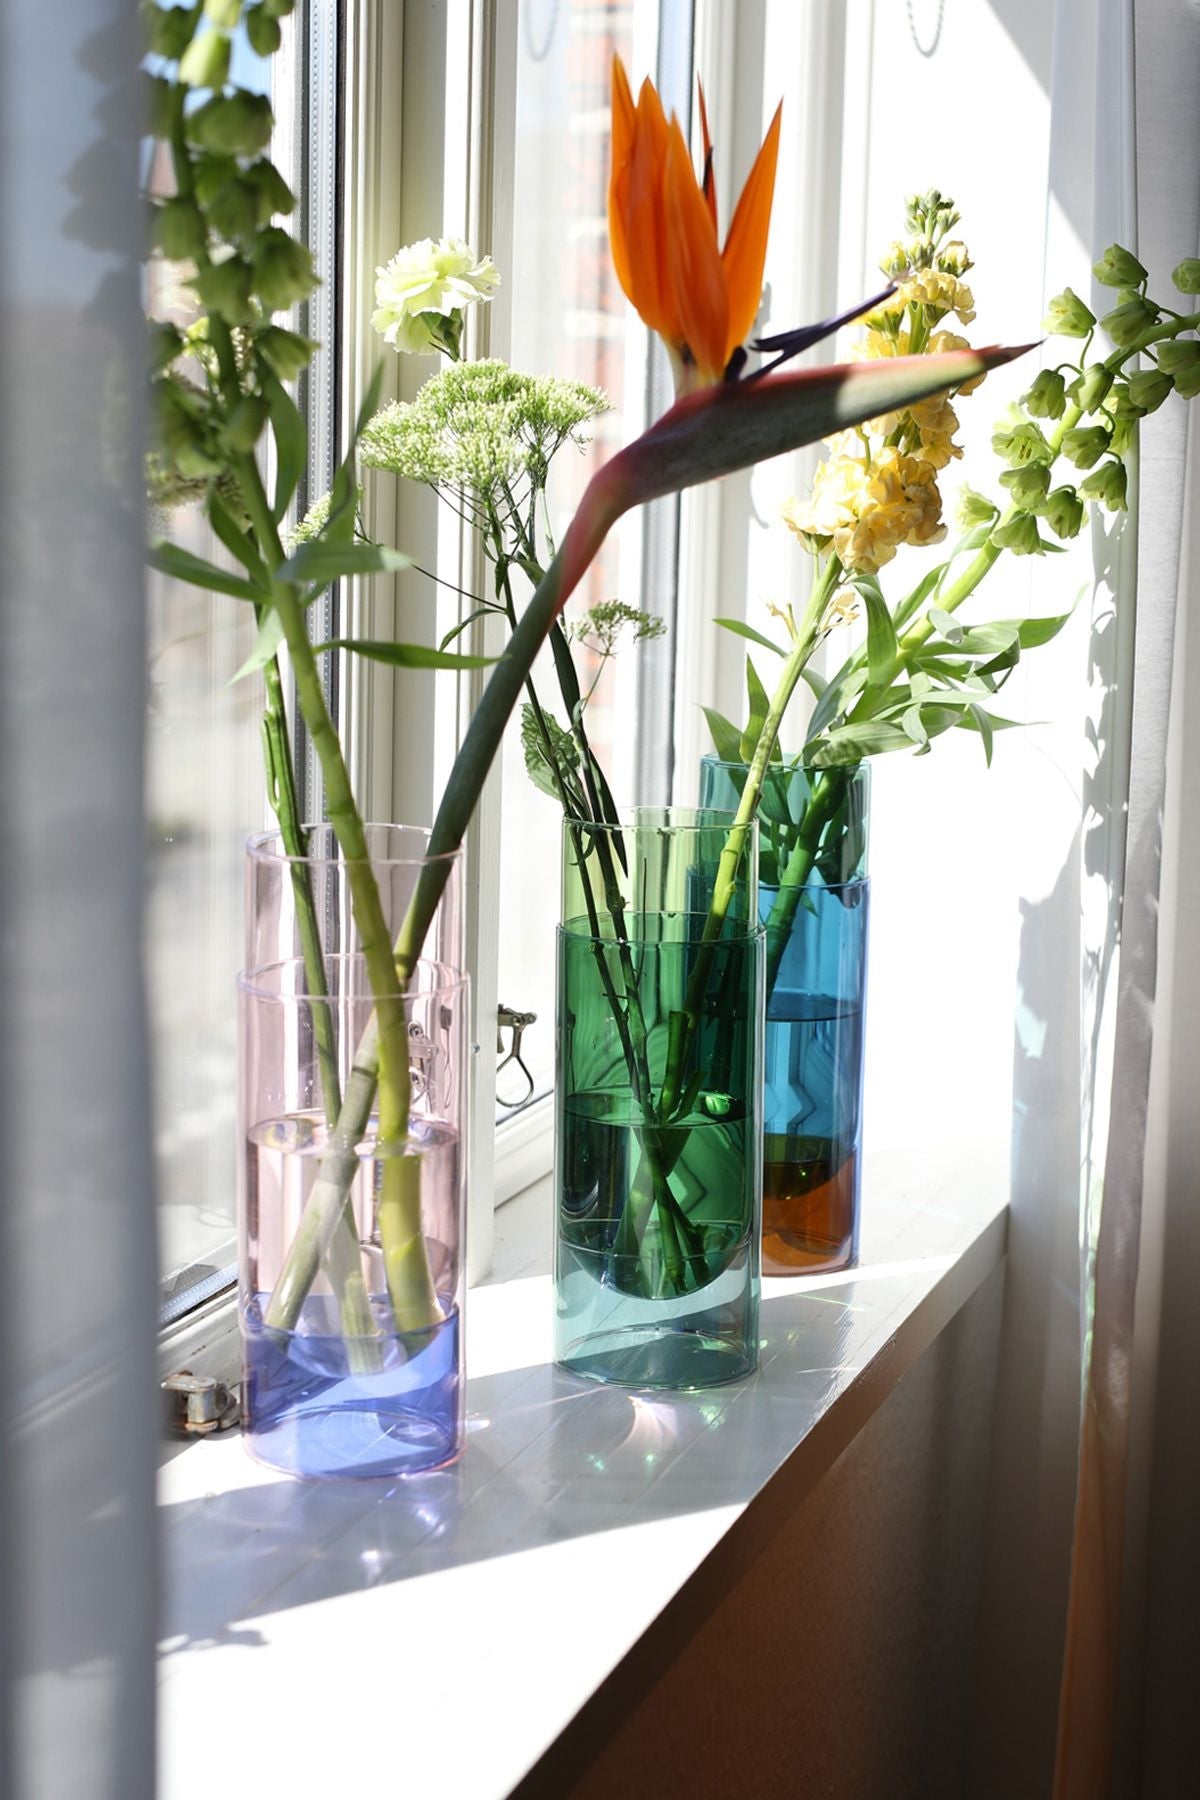 Studio über Bouquet Tube Vase, blau